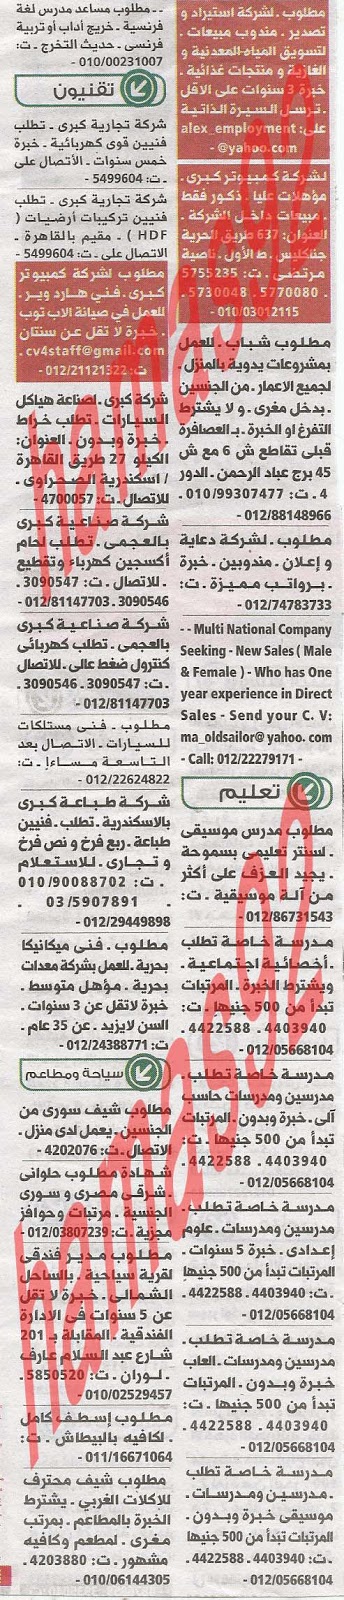 وظائف جريدة الوسيط الاسكندرية 23/7/2013 ( 14 رمضان) %D9%88+%D8%B3+%D8%B3+7